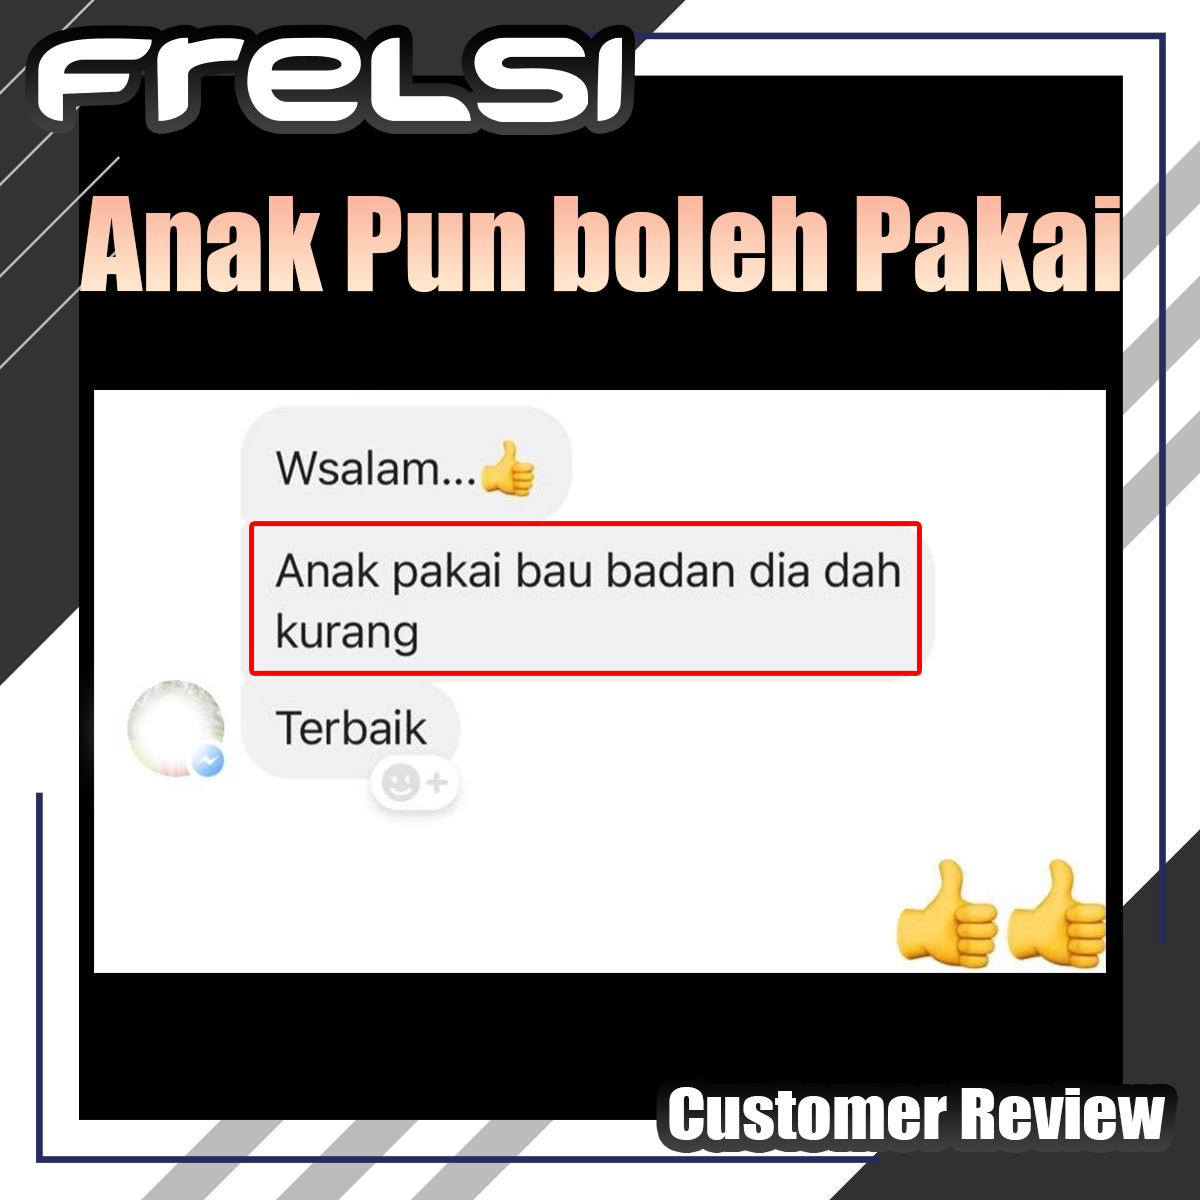 Frelsi Deodorant Customer Review - Anak Pun Boleh Pakai